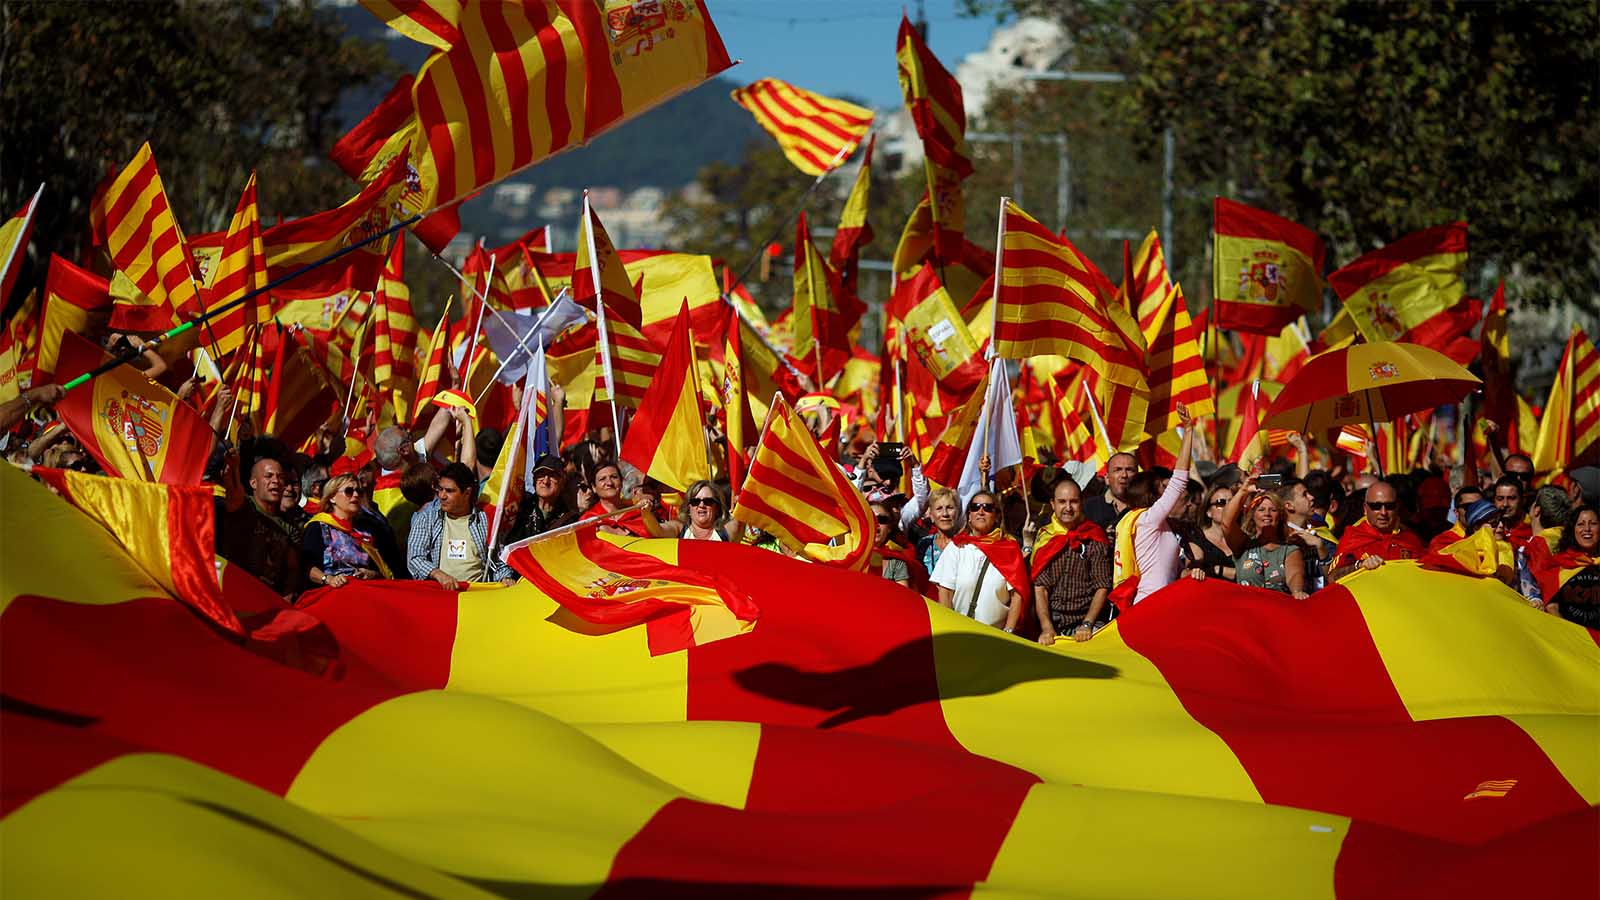 מפגינים בעד הישארות קטלניה בספרד מחזיקים דגלי ספרד וקטלוניה 29 באוקטובר (צילום: REUTERS/Jon Nazca)